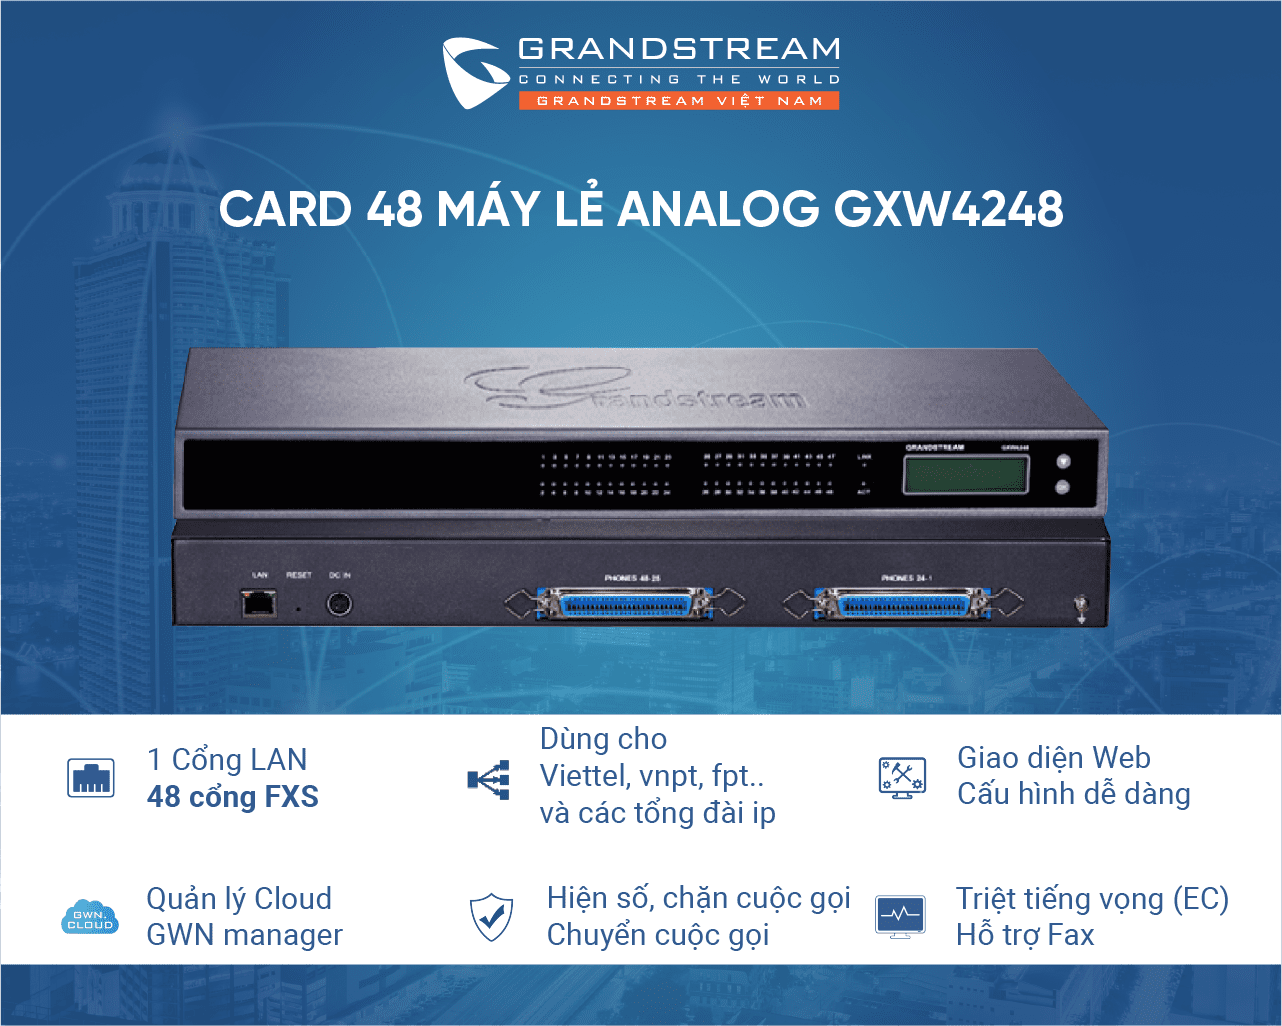 Card máy lẻ GXW4248 hay Gateway chuyển đổi VoiP sang Analog hỗ trợ 48 cổng FXS